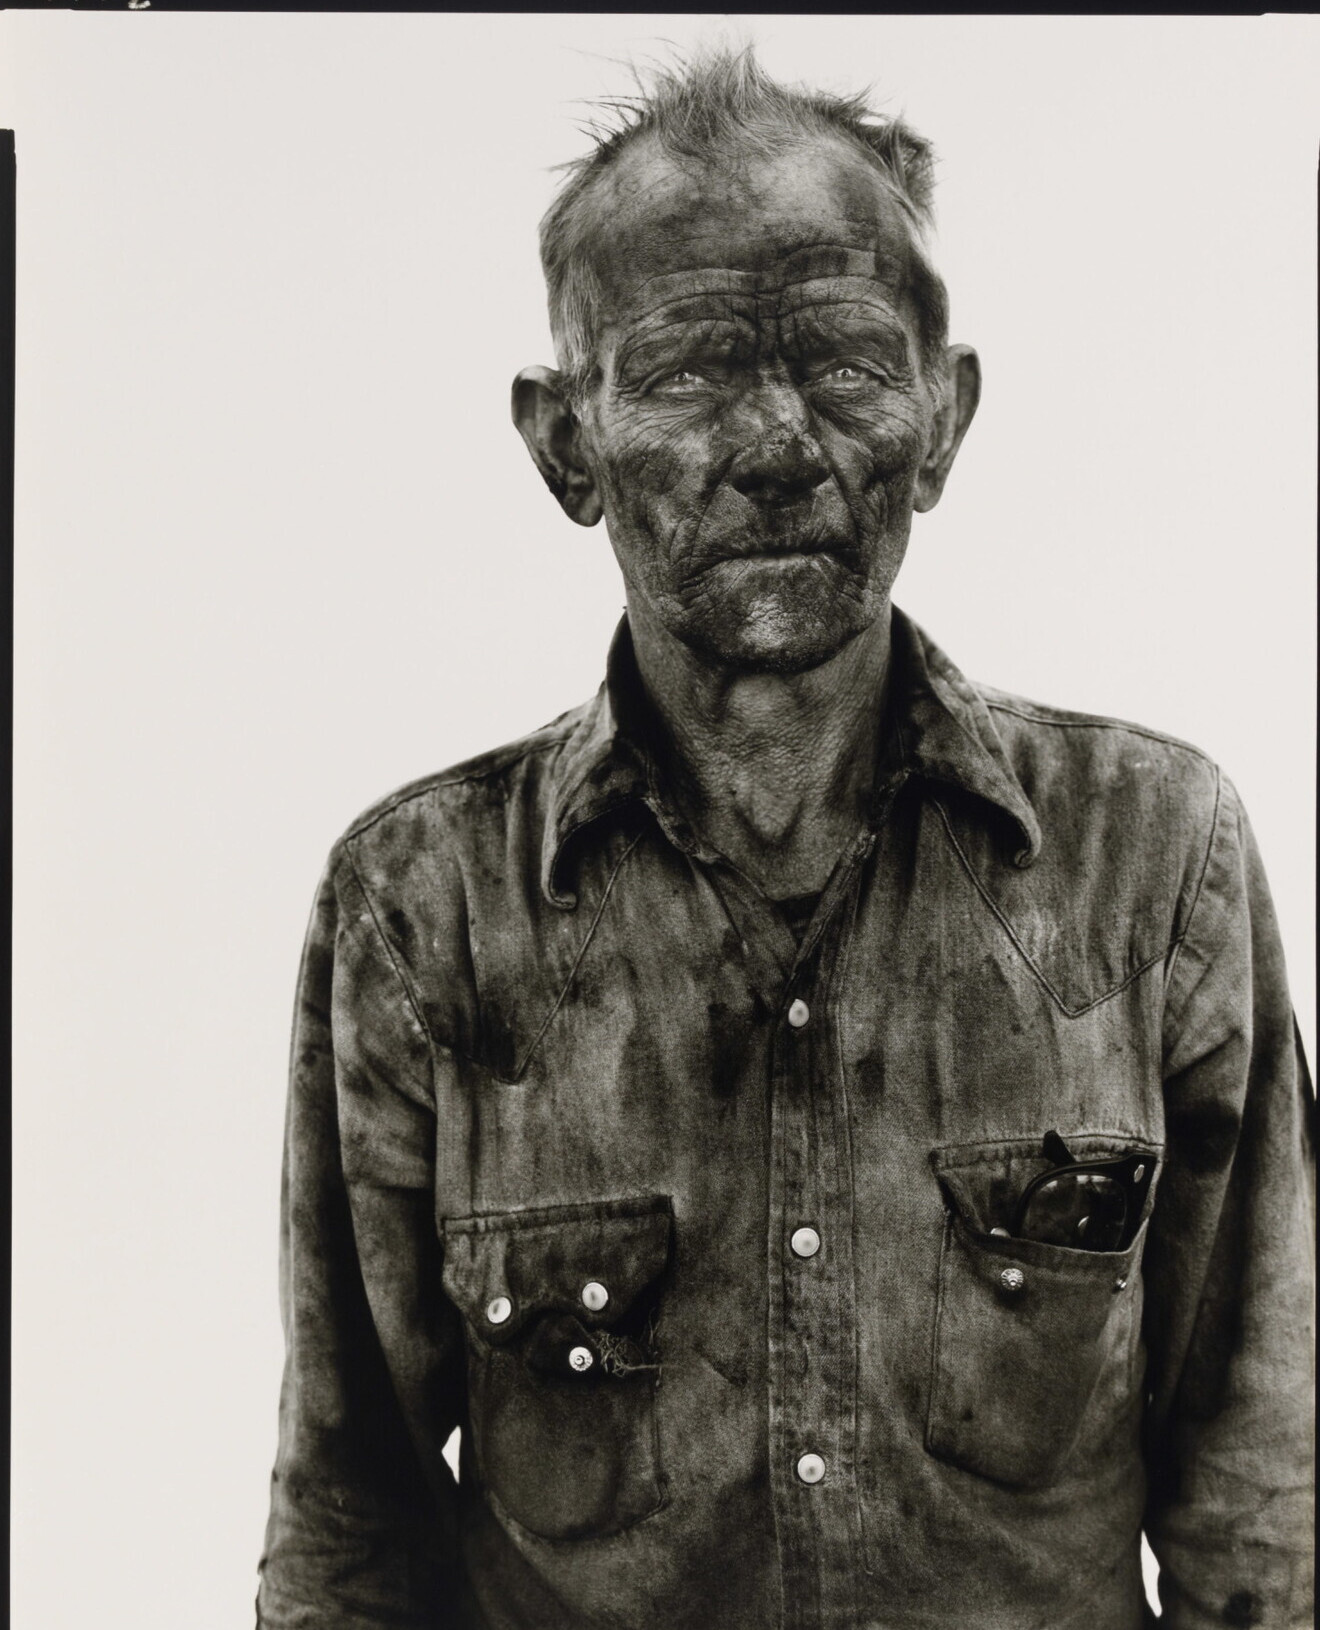 Гомер Эммонс, шахтер, Сомерсет, Колорадо, 28 августа 1980 г. Фотограф Ричард Аведон